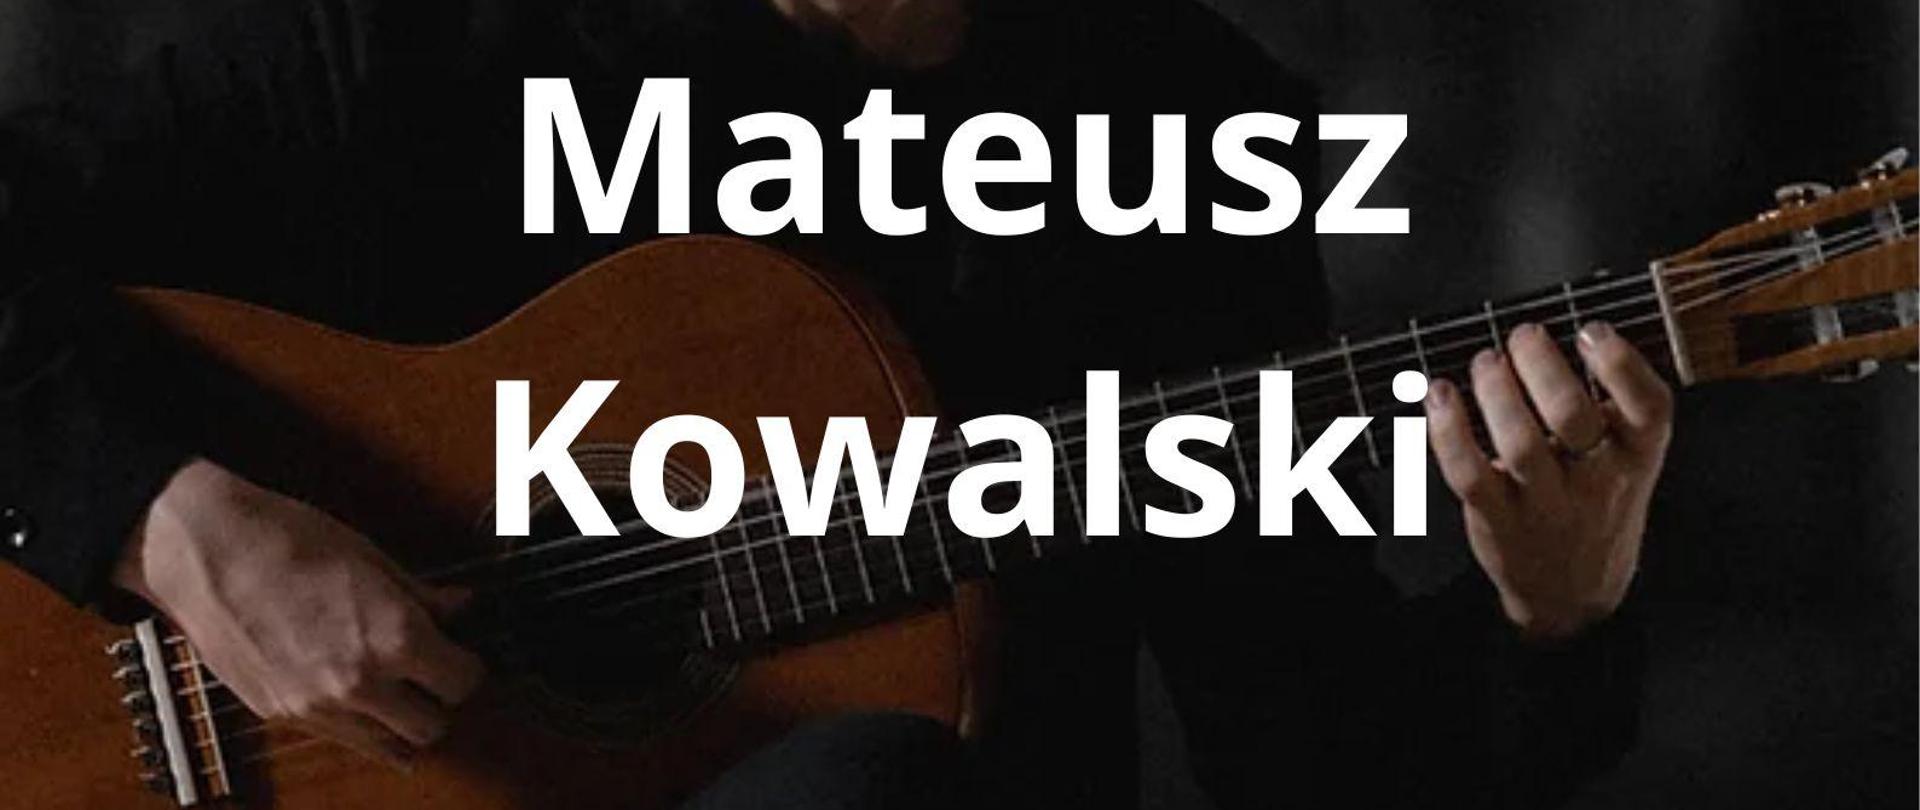 Centralnym motywem plakatu jest sylwetka gitarzysty - Mateusza Kowalskiego, w pozycji siedzącej, z gitarą klasyczną, na ciemnoszarym tle. Na plakacie umieszczono informacje czcionką w kolorze białym, o treści (od góry): "Państwowa Szkoła Muzyczna I i II st. im. K. Szymanowskiego w Zamościu", poniżej: " Mateusz Kowalski", poniżej: "17 kwietnia 2024", poniżej: "Warsztaty metodyczne - 10.00-17.00 Aula PSM, Koncert - 18.00".